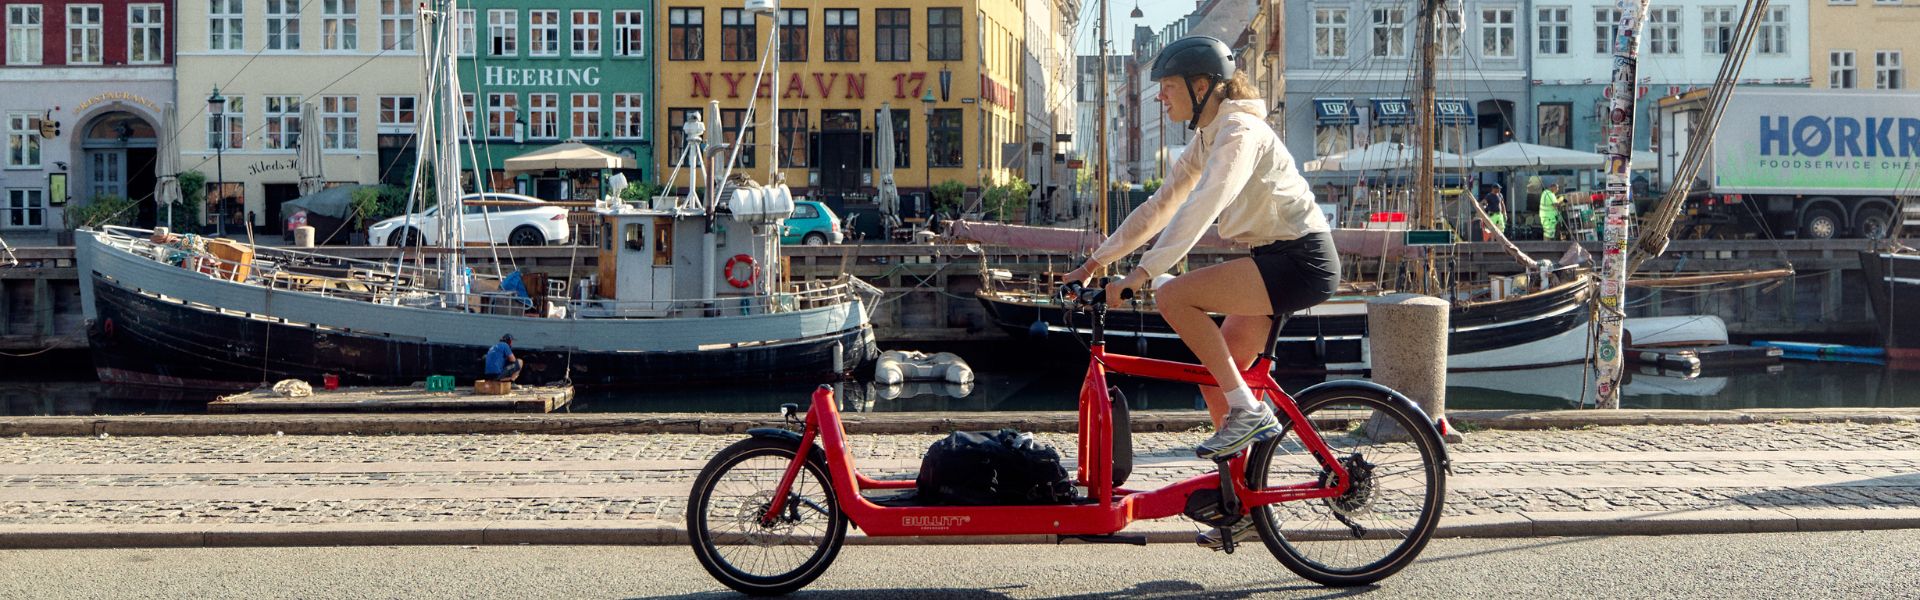 Kööpenhamina – pyörällä kaupungissa